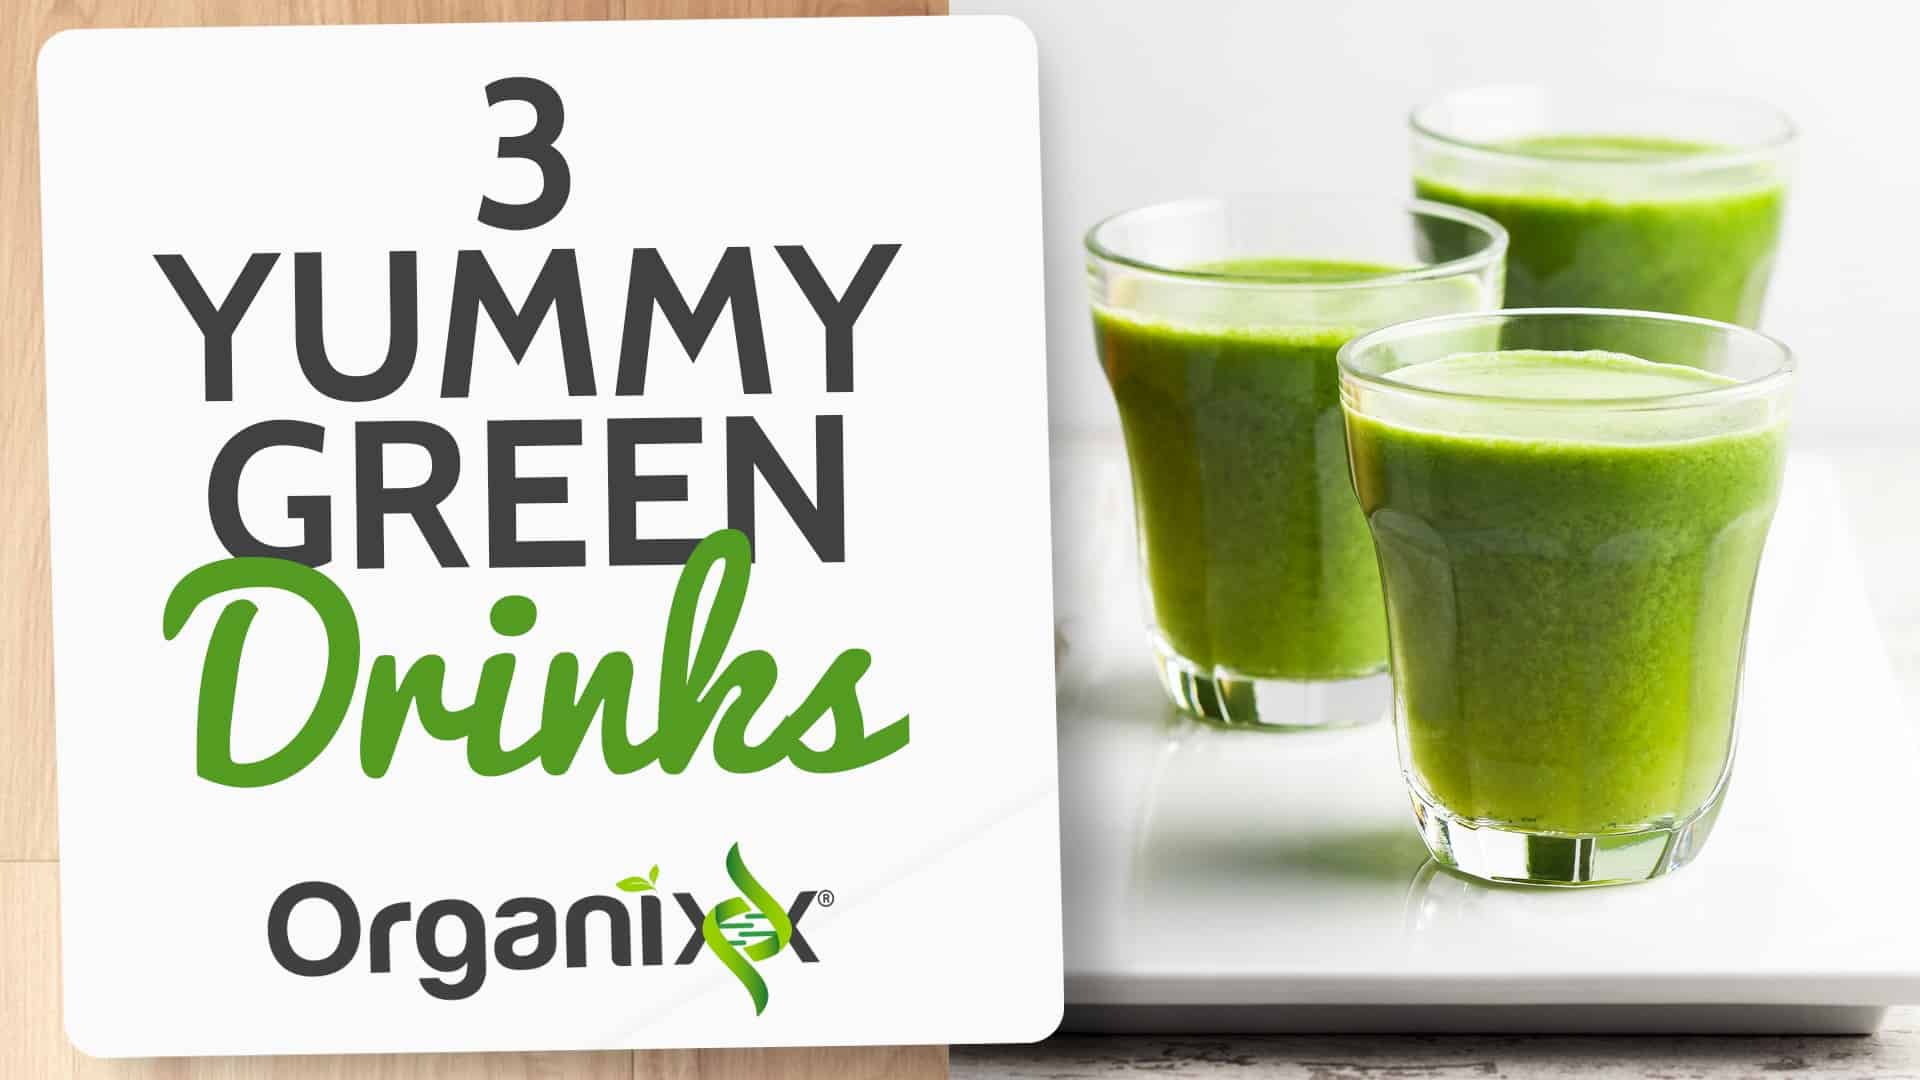 3 Yummy Green Drink Recipes